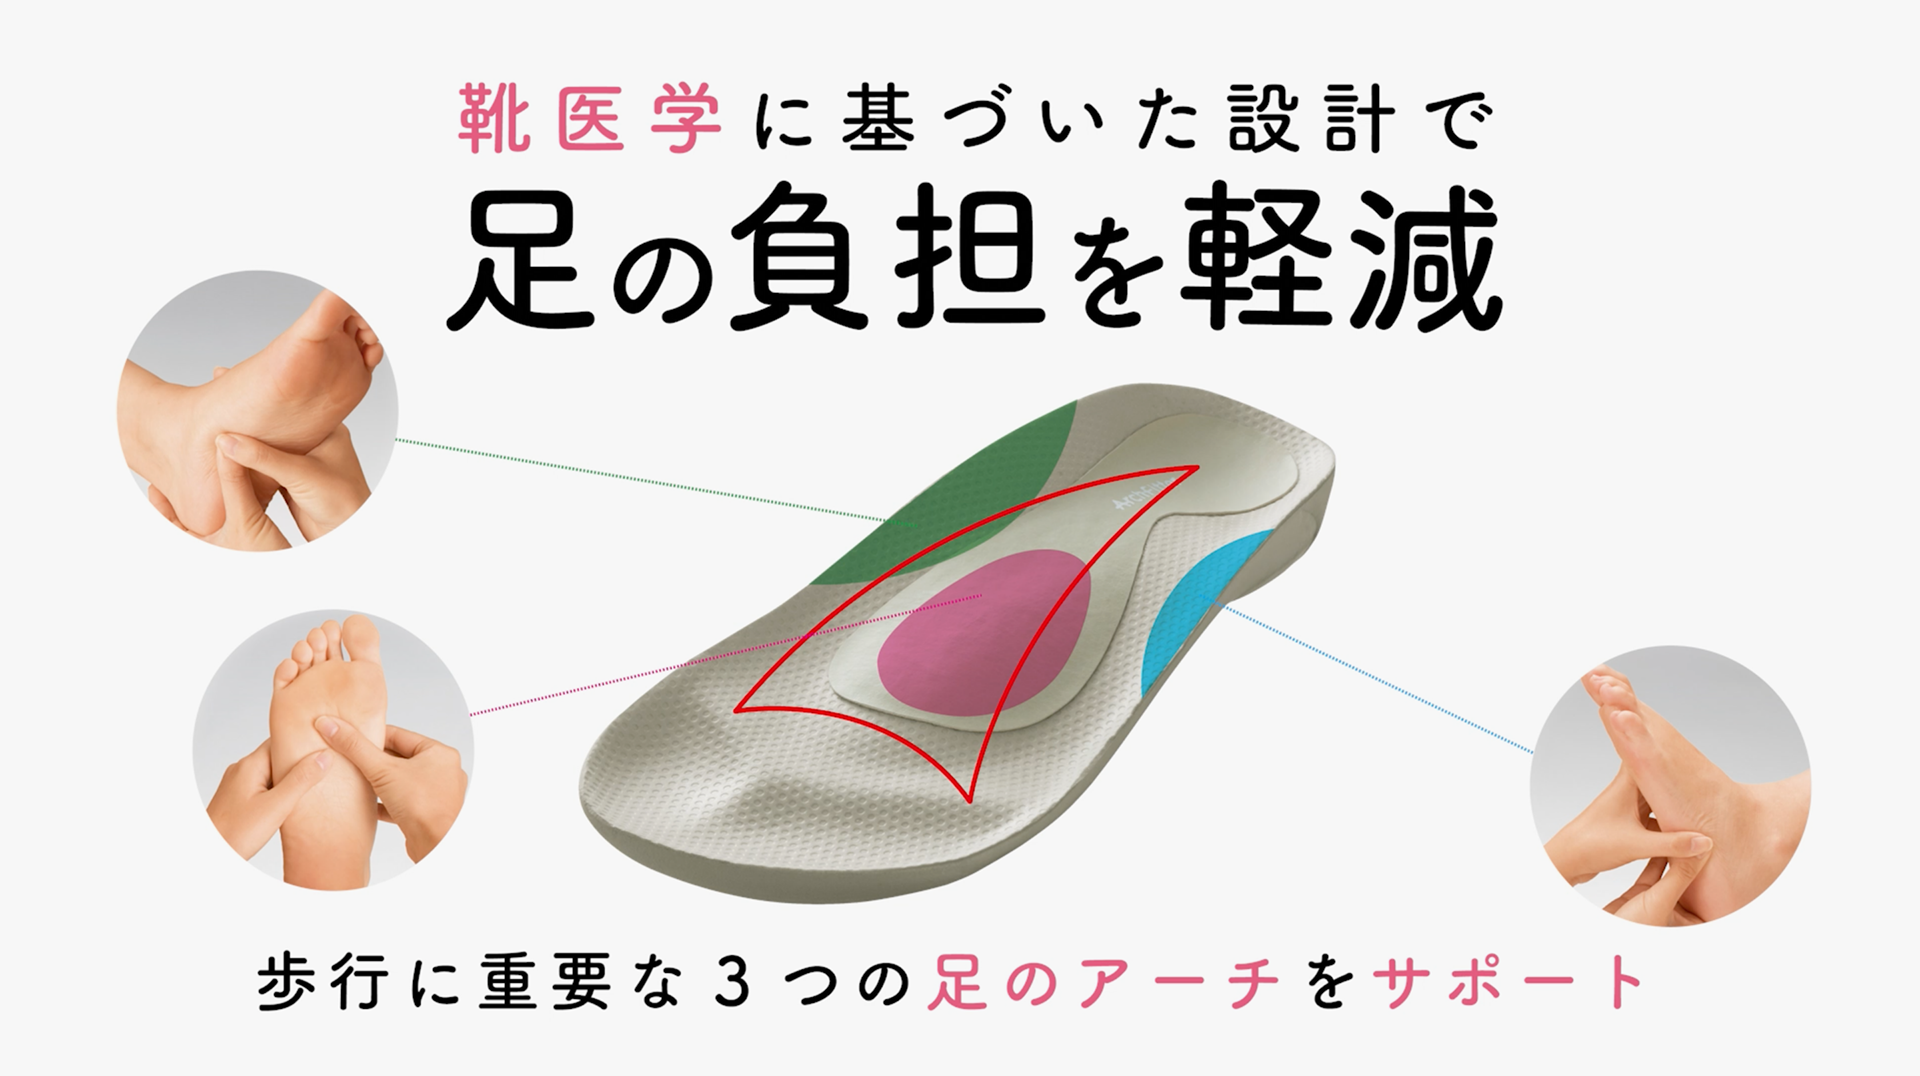 家族そろって室内履きで健康維持 待望のスリッパタイプが新登場 Akaishi 公式通販